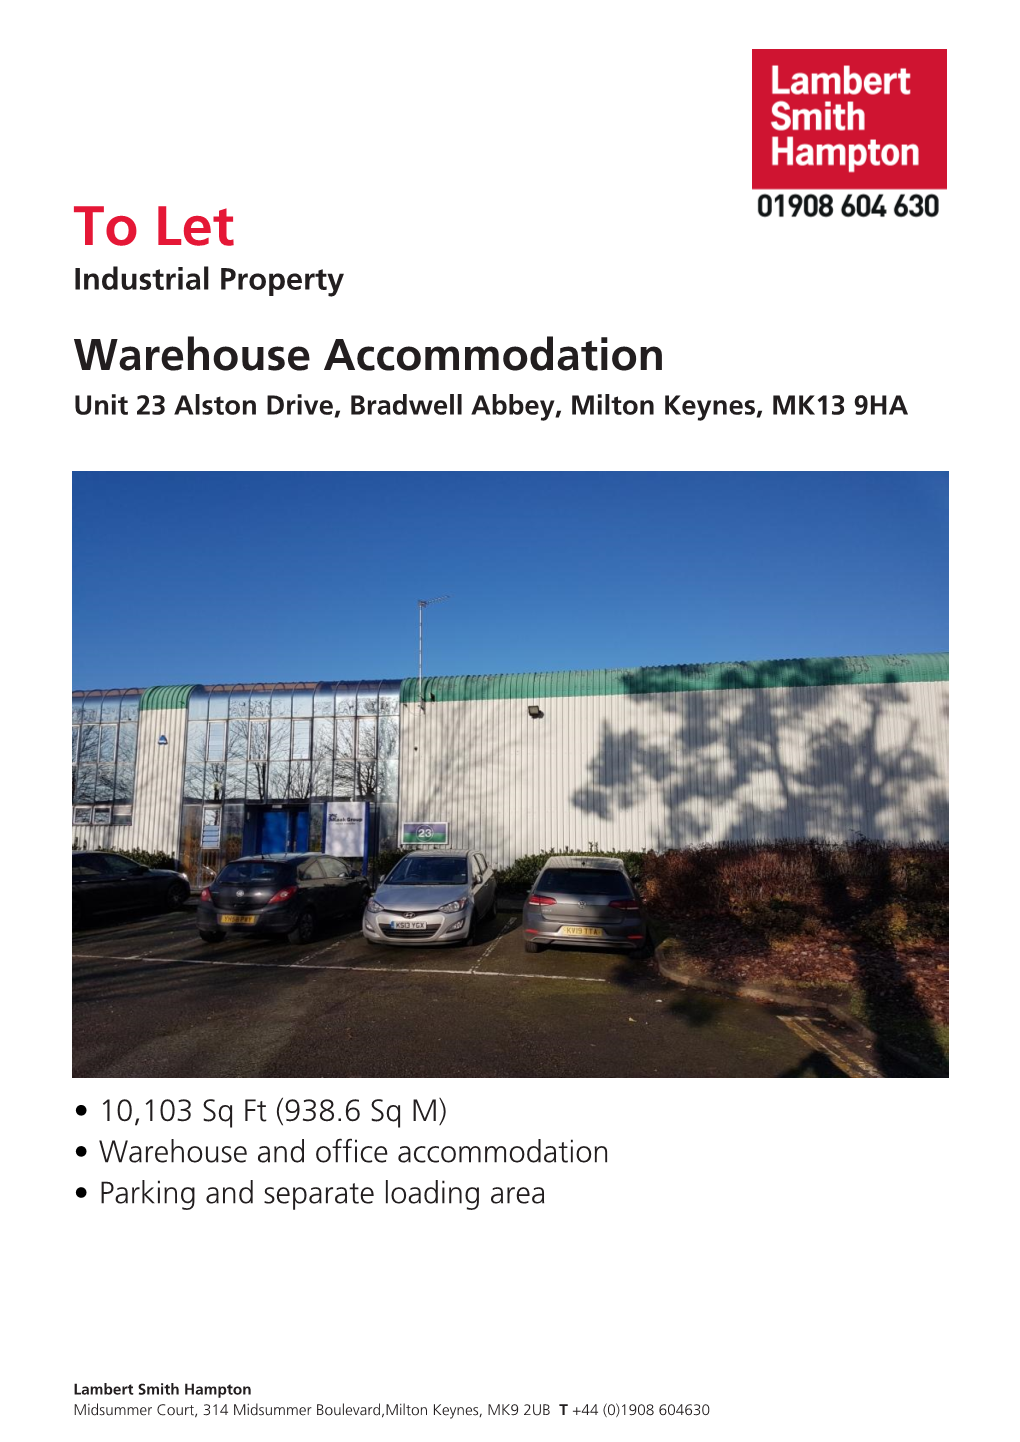 To Let,Unit 23 Alston Drive, Bradwell Abbey, Milton Keynes, MK13